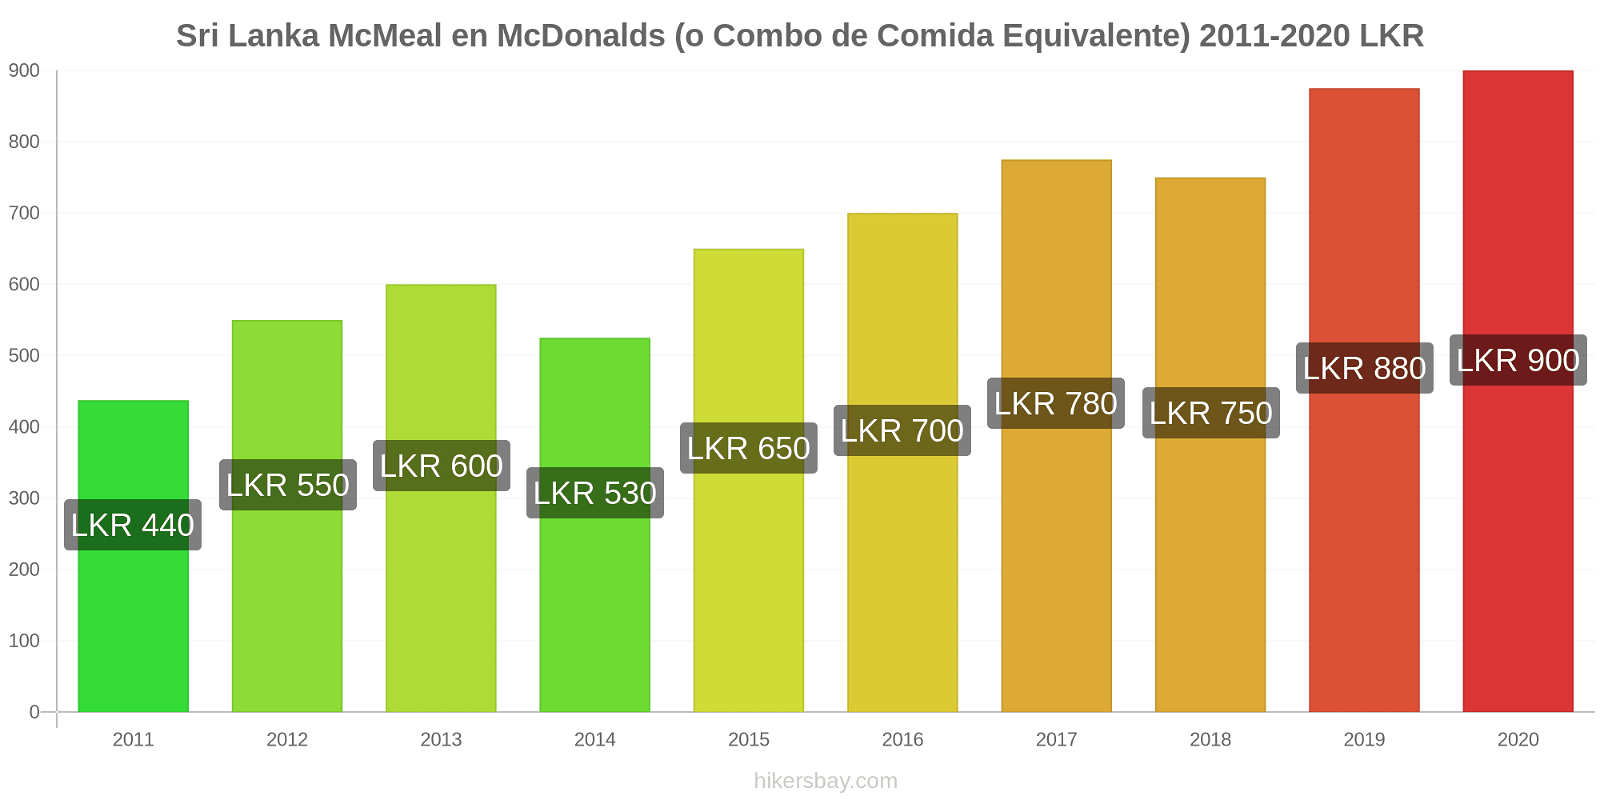 Sri Lanka cambios de precios McMeal en McDonalds (o menú equivalente) hikersbay.com